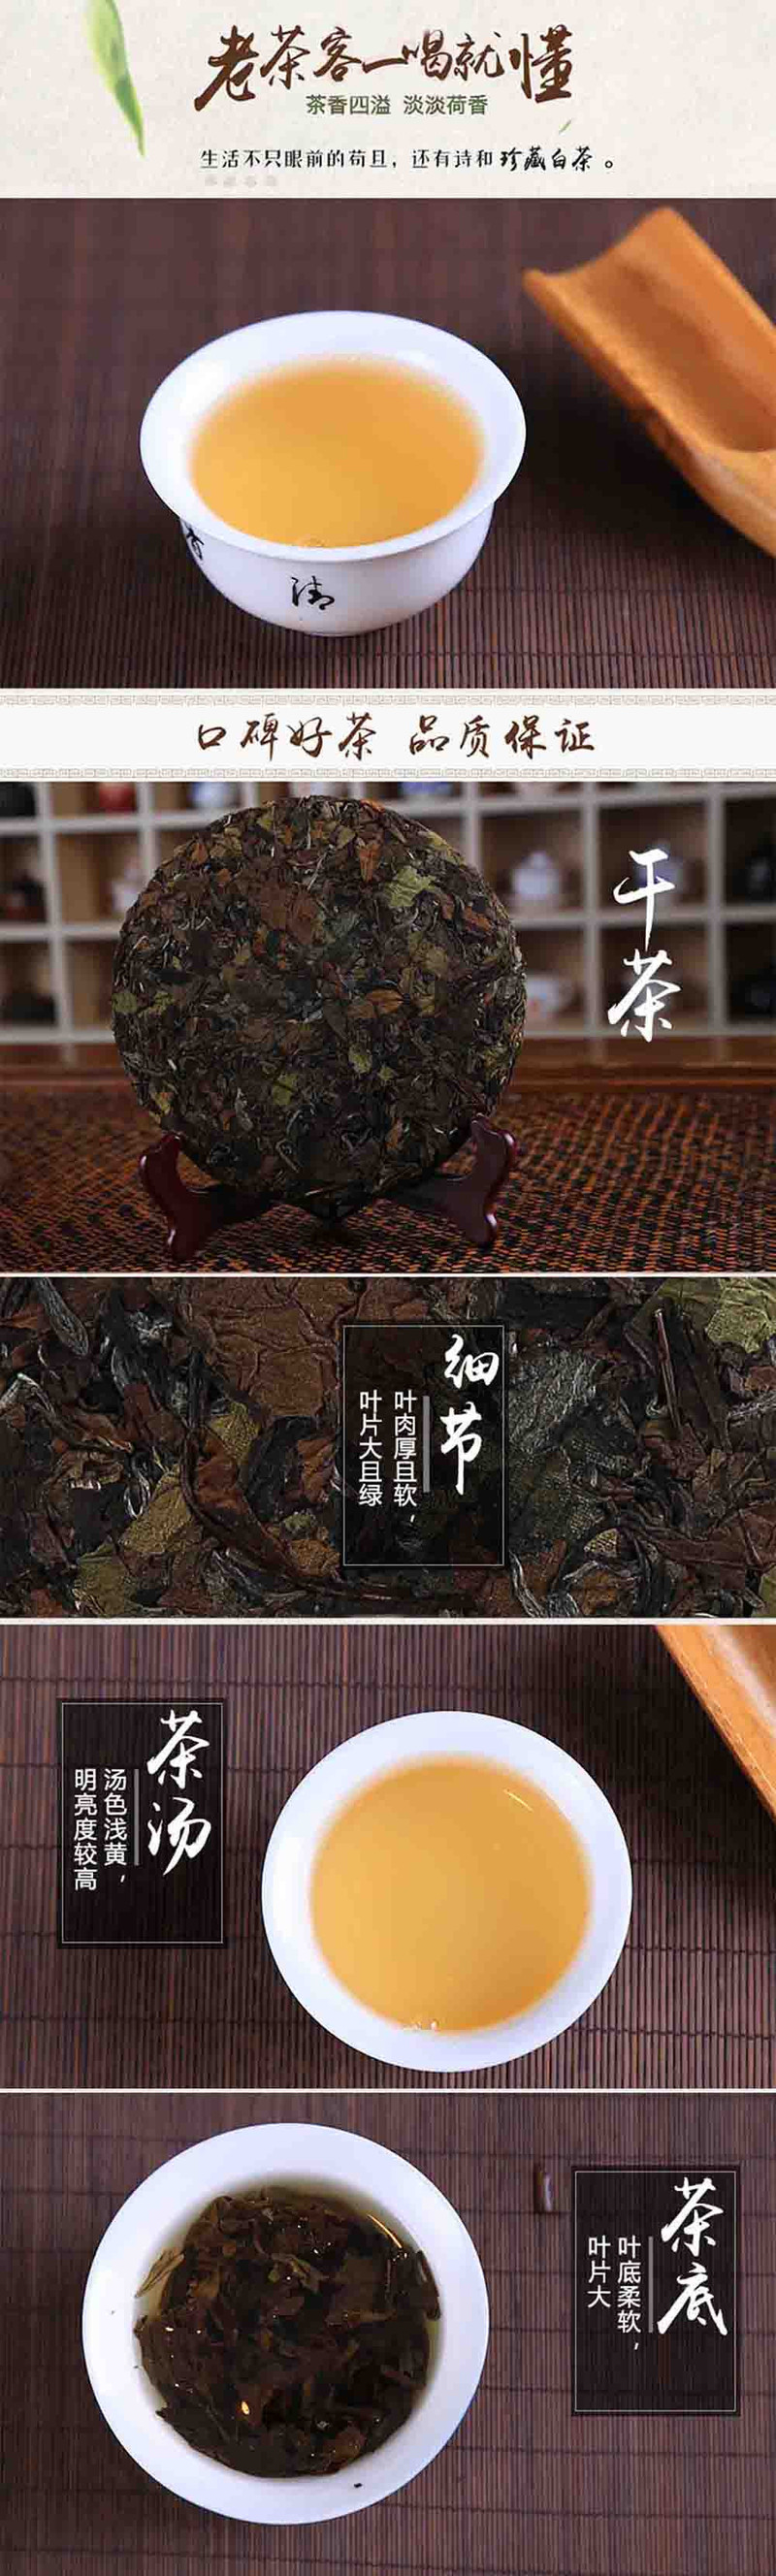  洛阳农品 蓝天茗茶 信阳31°老白茶350g特级新鲜茶叶礼盒